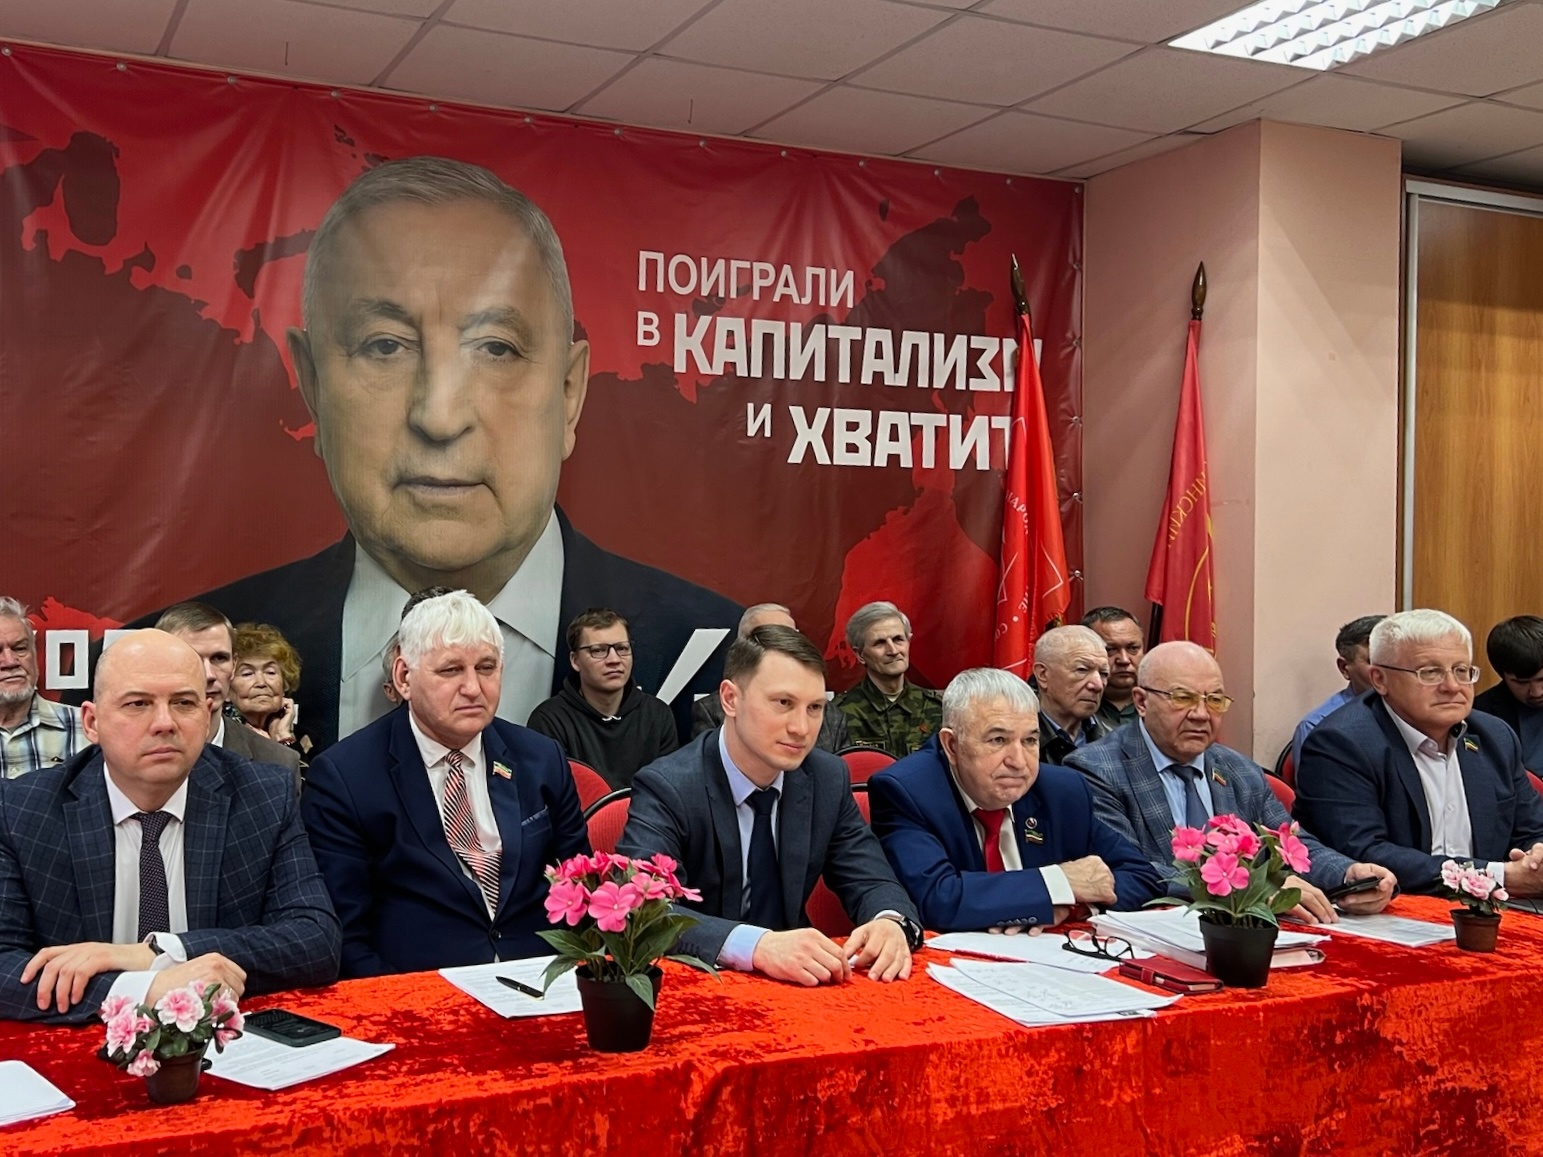 Сегодня принял участие в Общероссийском открытом партийном собрании КПРФ, которое прошло в режиме видеоконференции со всеми региональными отделениями партии. 